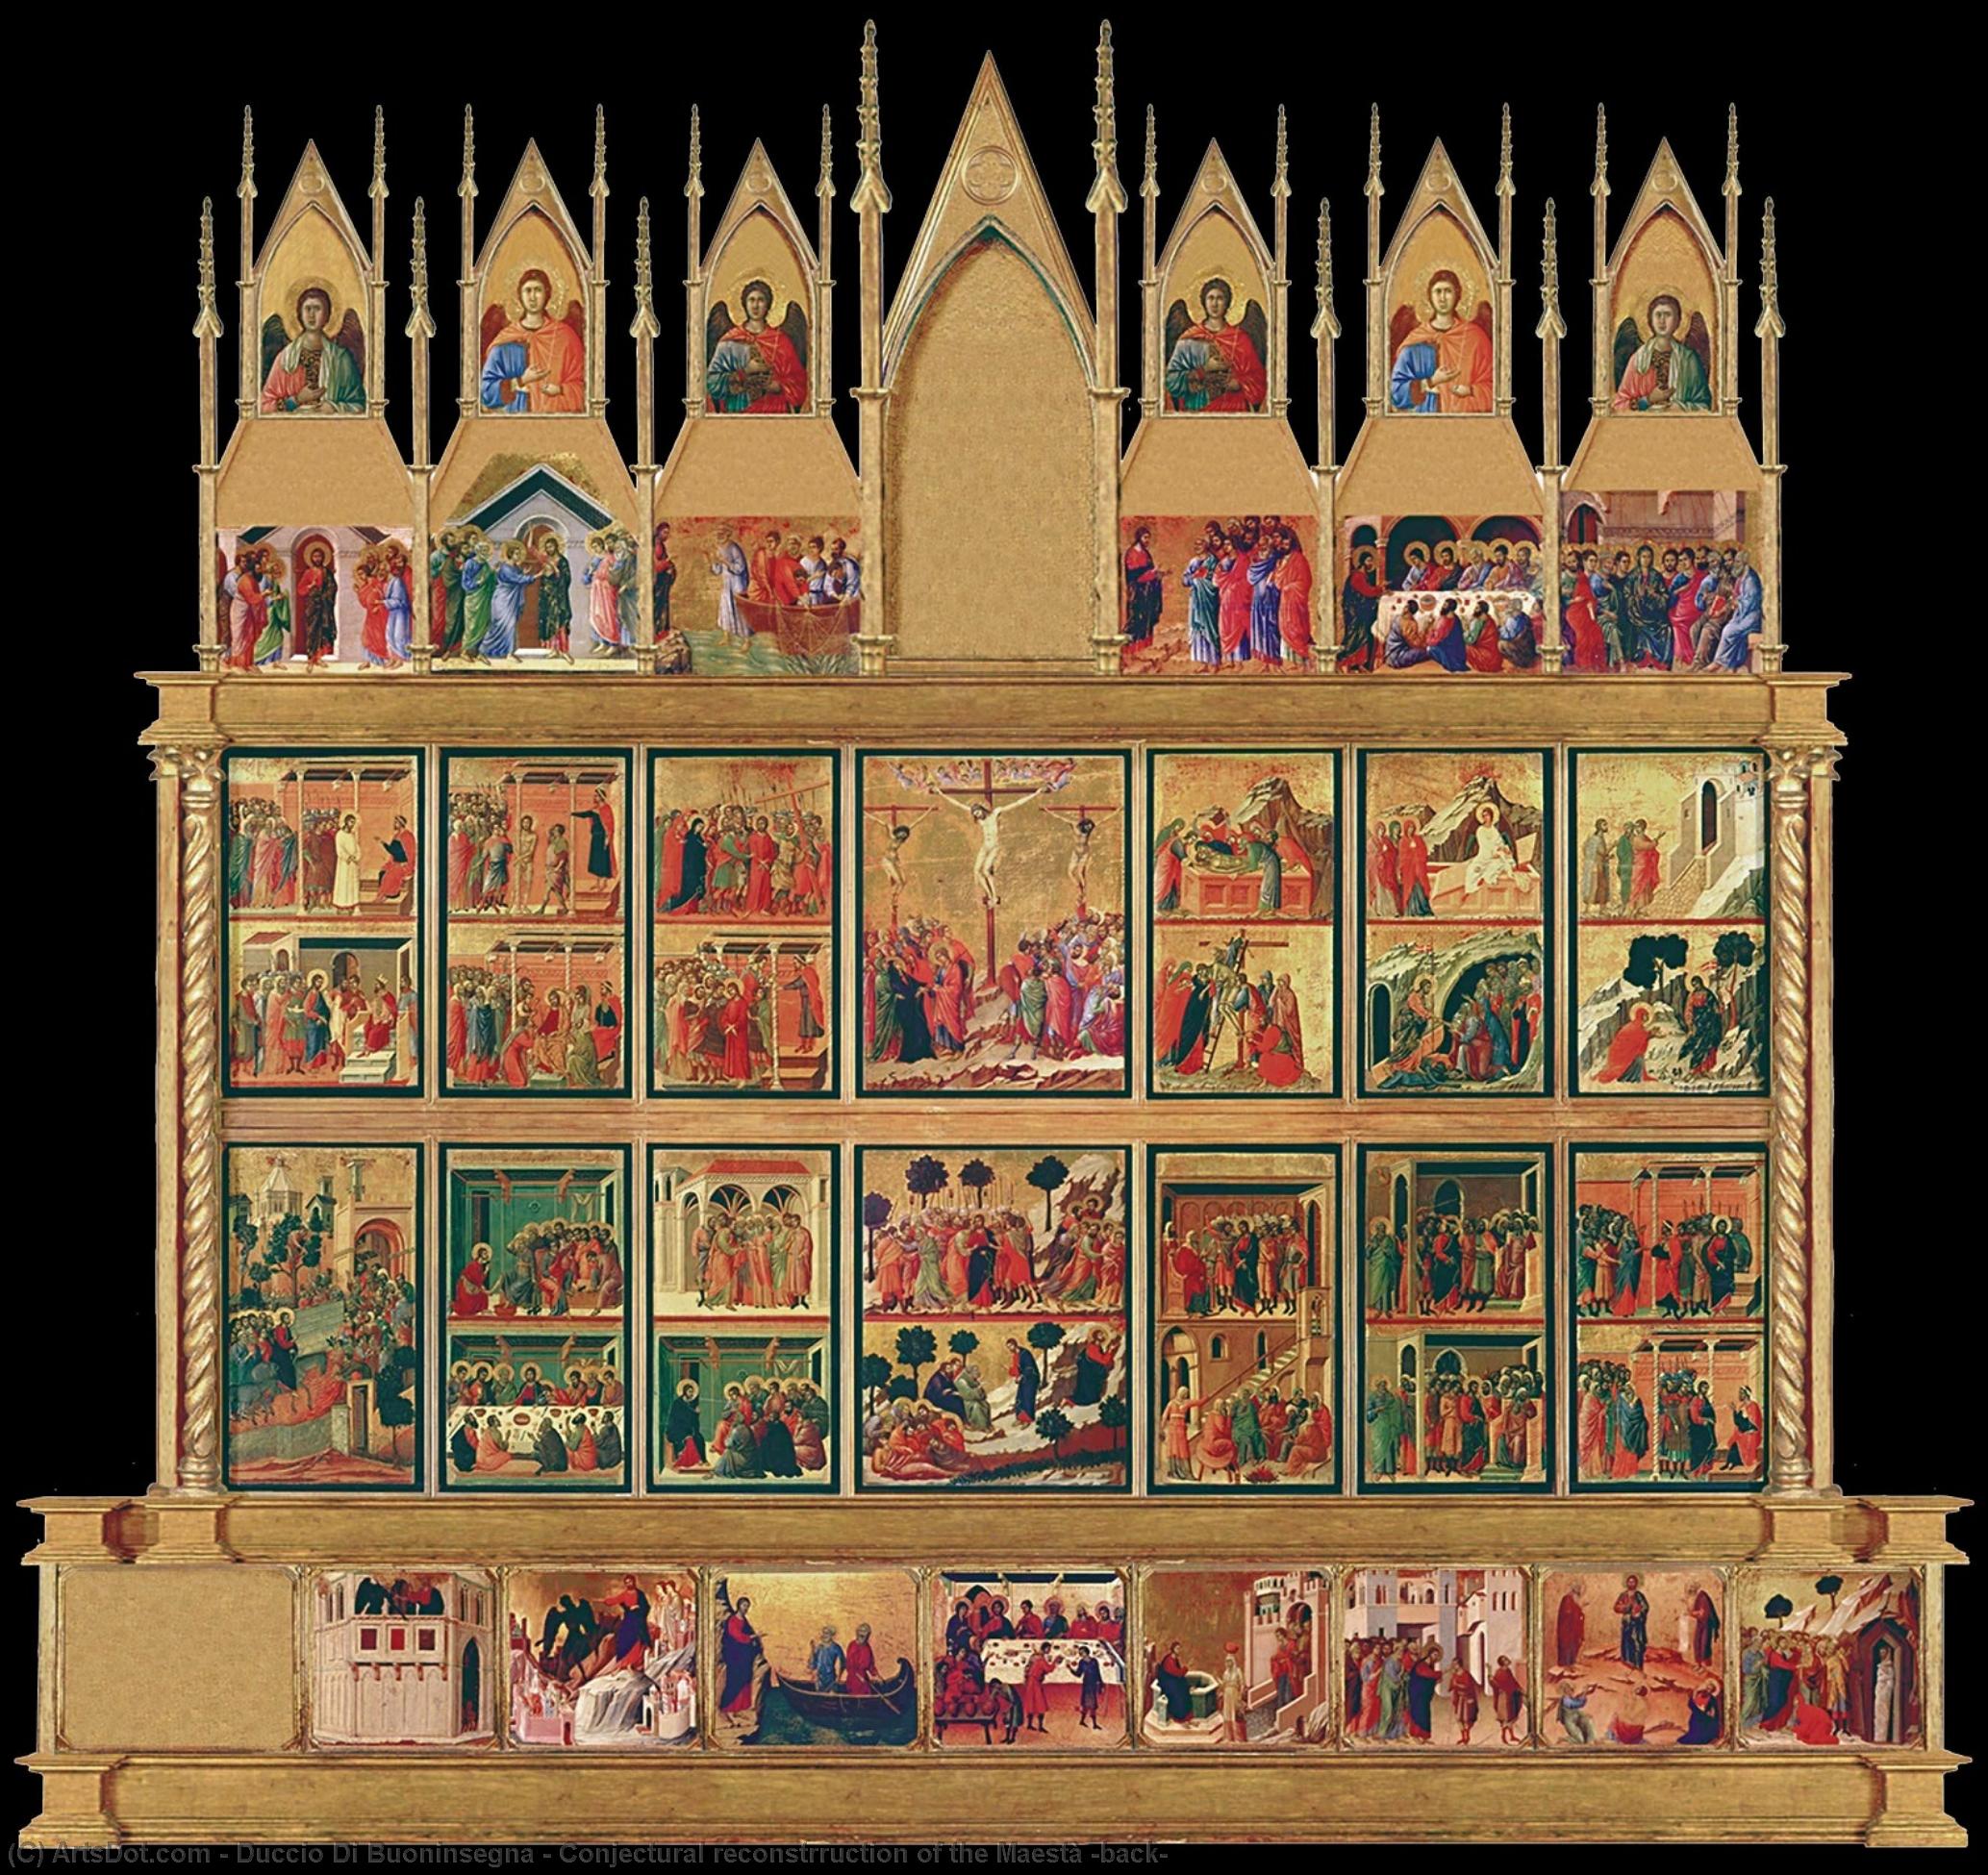 WikiOO.org - Encyclopedia of Fine Arts - Lukisan, Artwork Duccio Di Buoninsegna - Conjectural reconstrruction of the Maestà (back)